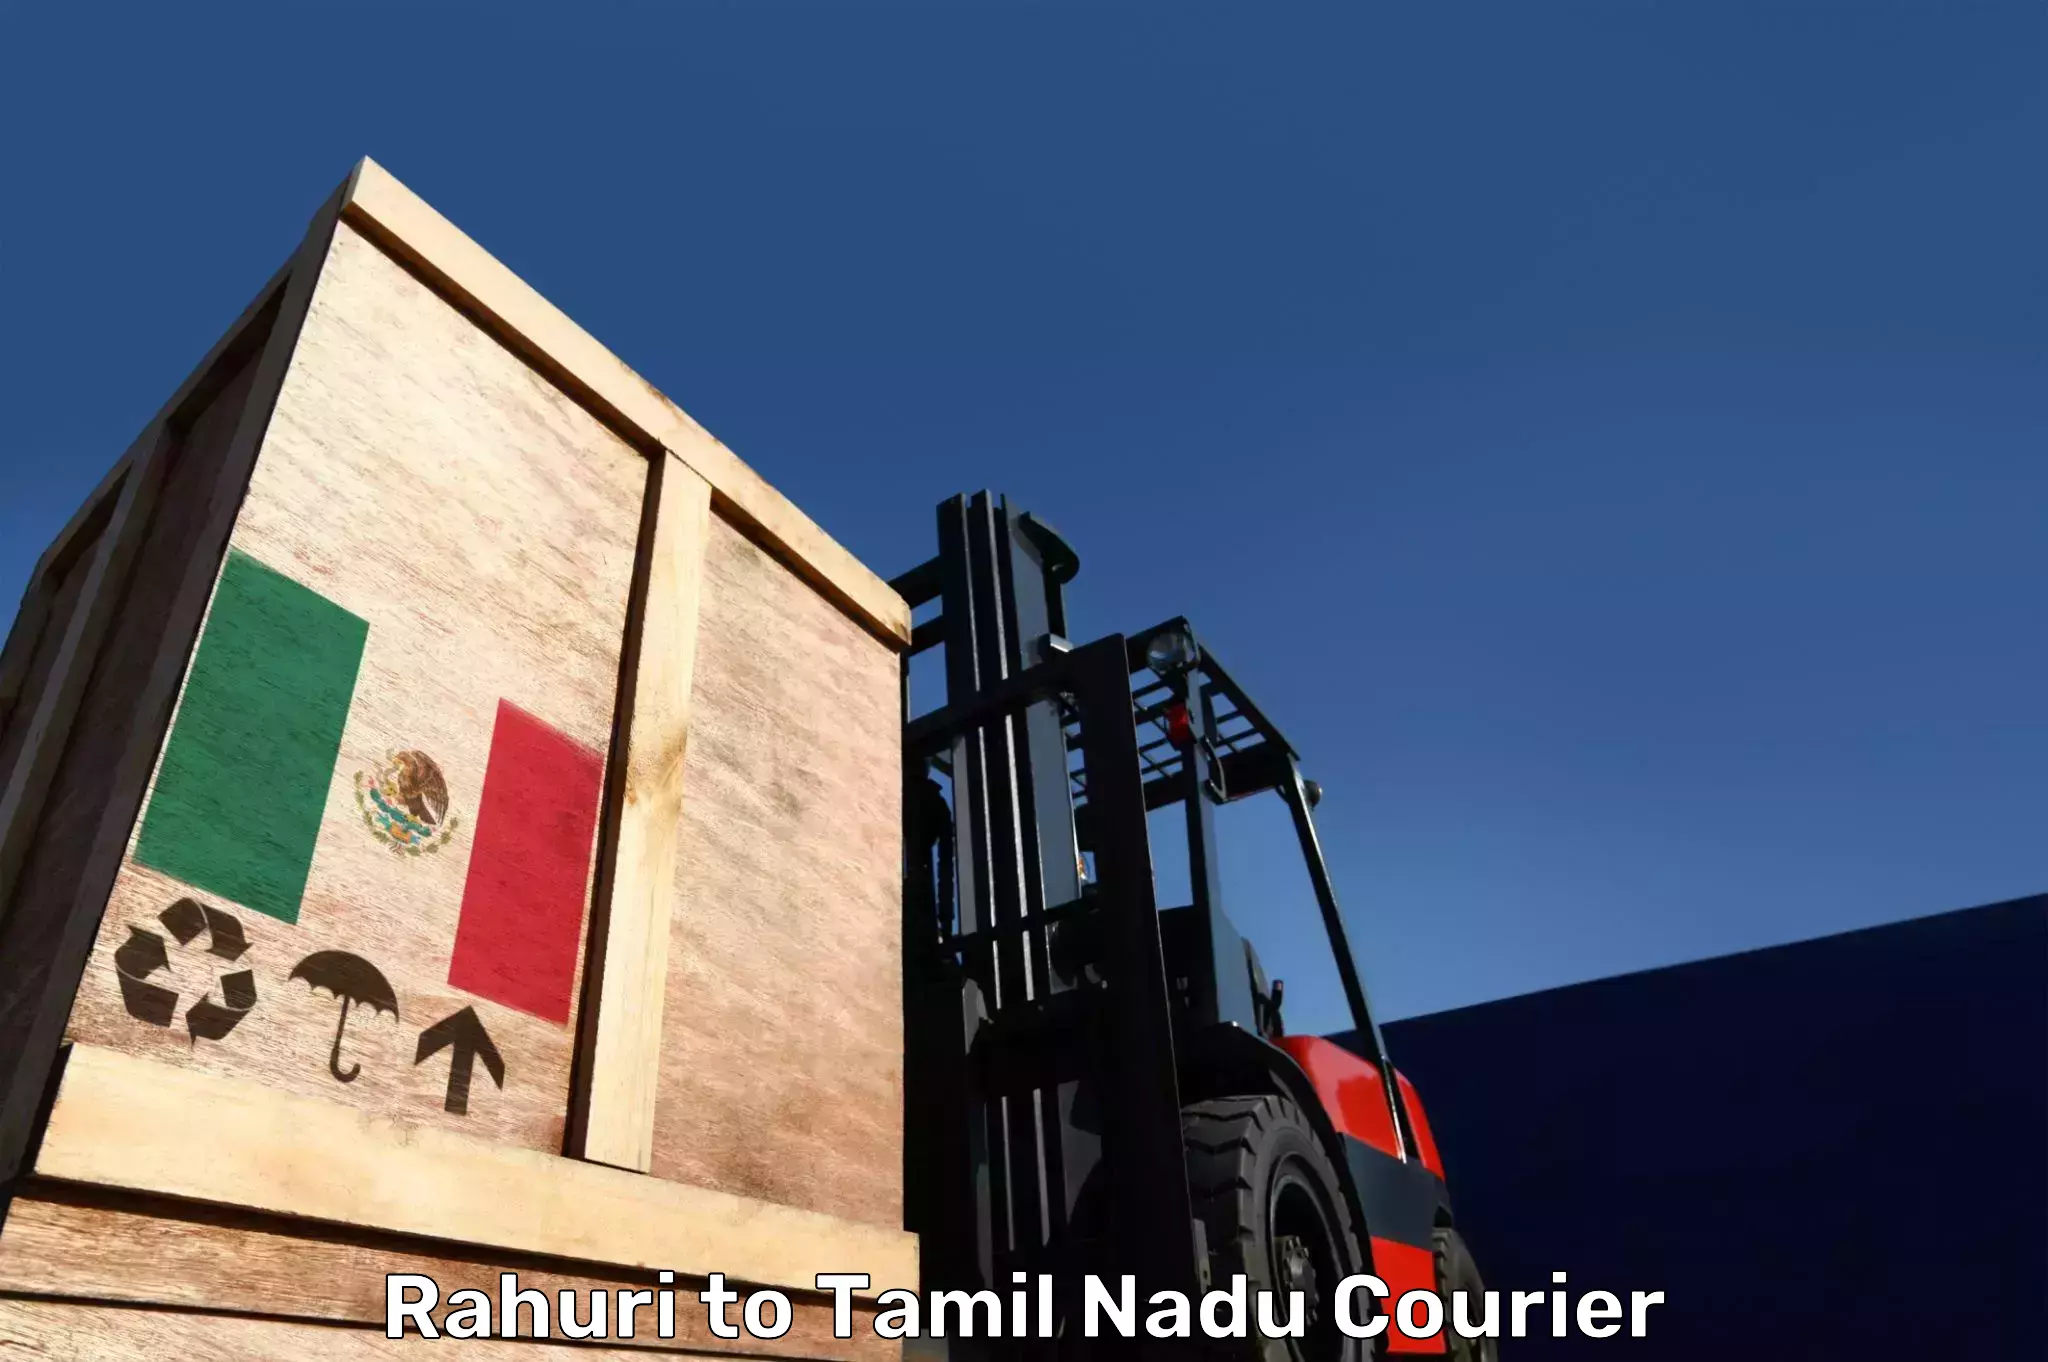 Luggage transport service Rahuri to Tiruturaipundi